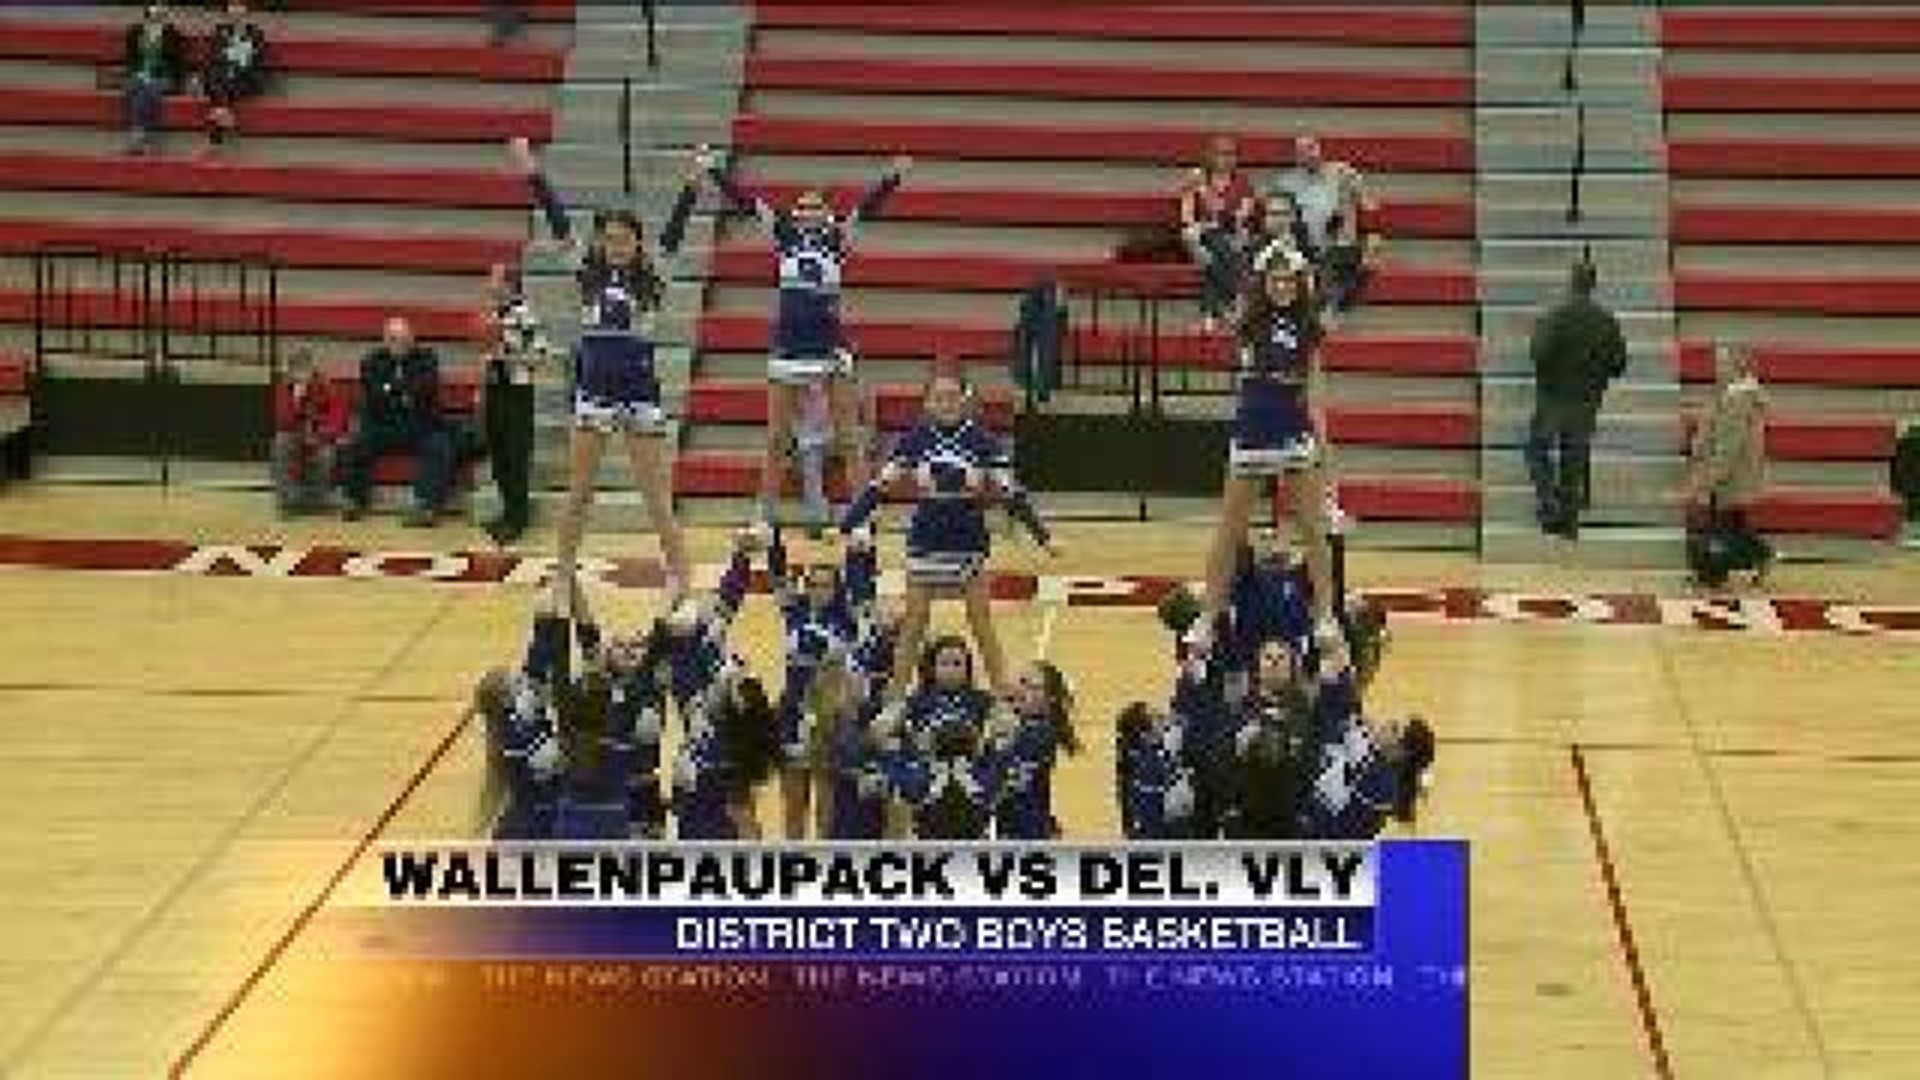 Wallenpaupack vs Delaware Valley